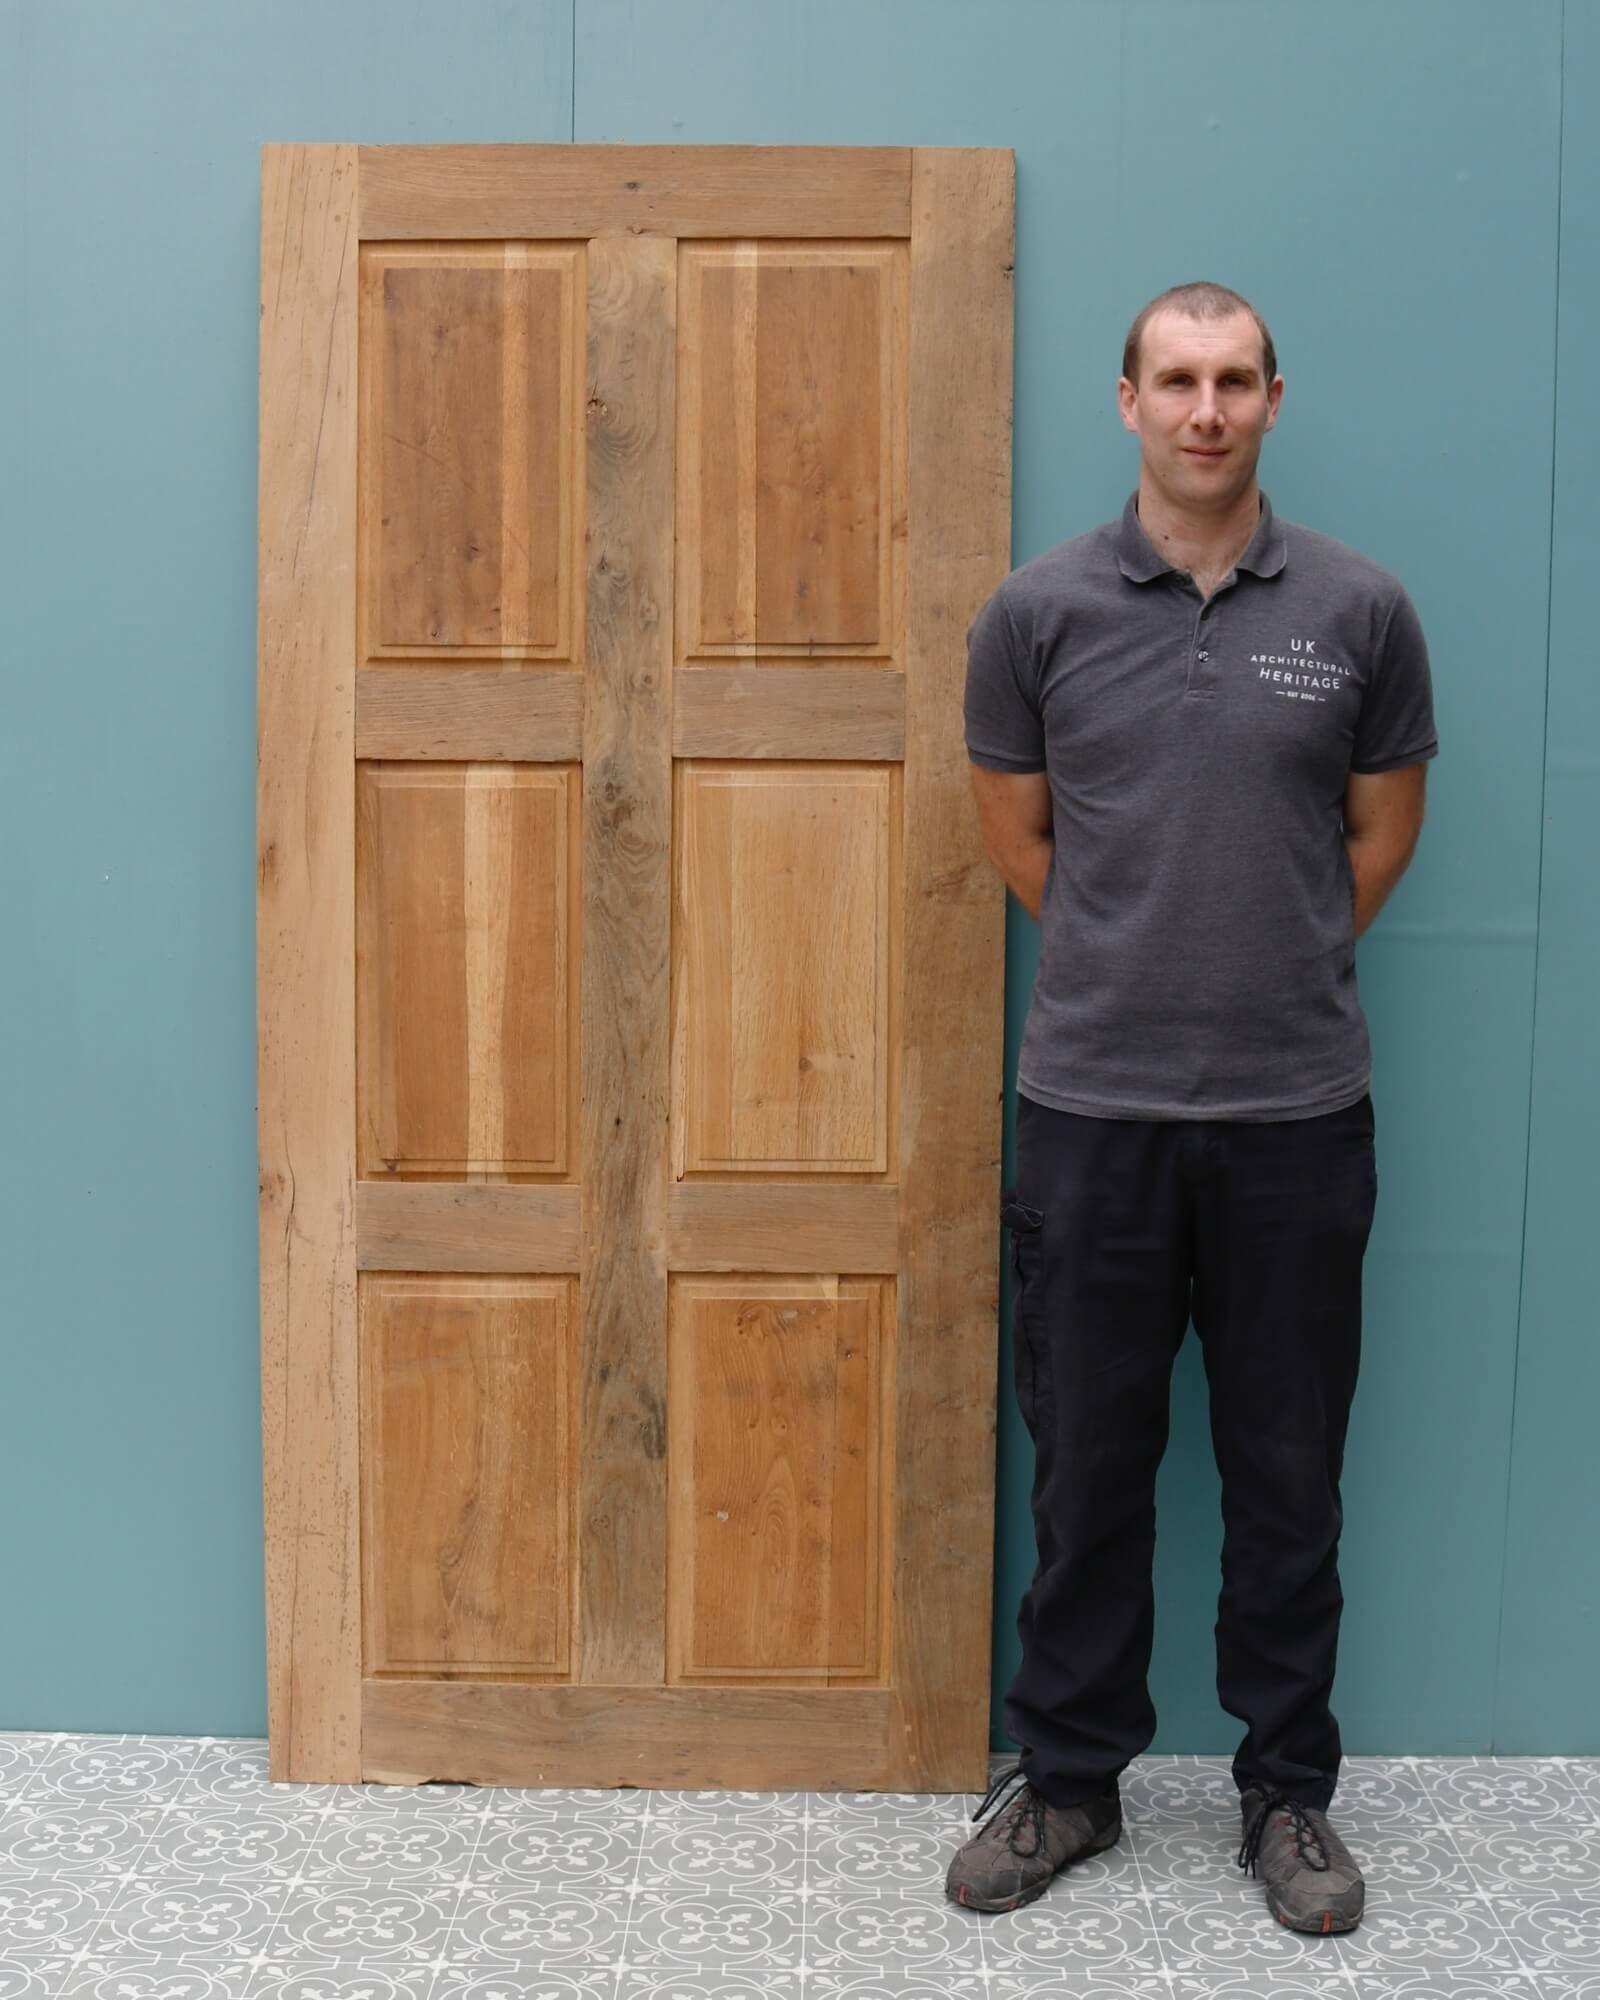 Porte française en chêne recyclé à six panneaux, adaptée à un usage intérieur. Fabriquée à partir de bois de chêne ancien, cette porte récupérée a un aspect rustique et une finition décapée, prête à être peinte, teintée ou cirée. Il s'agit d'un